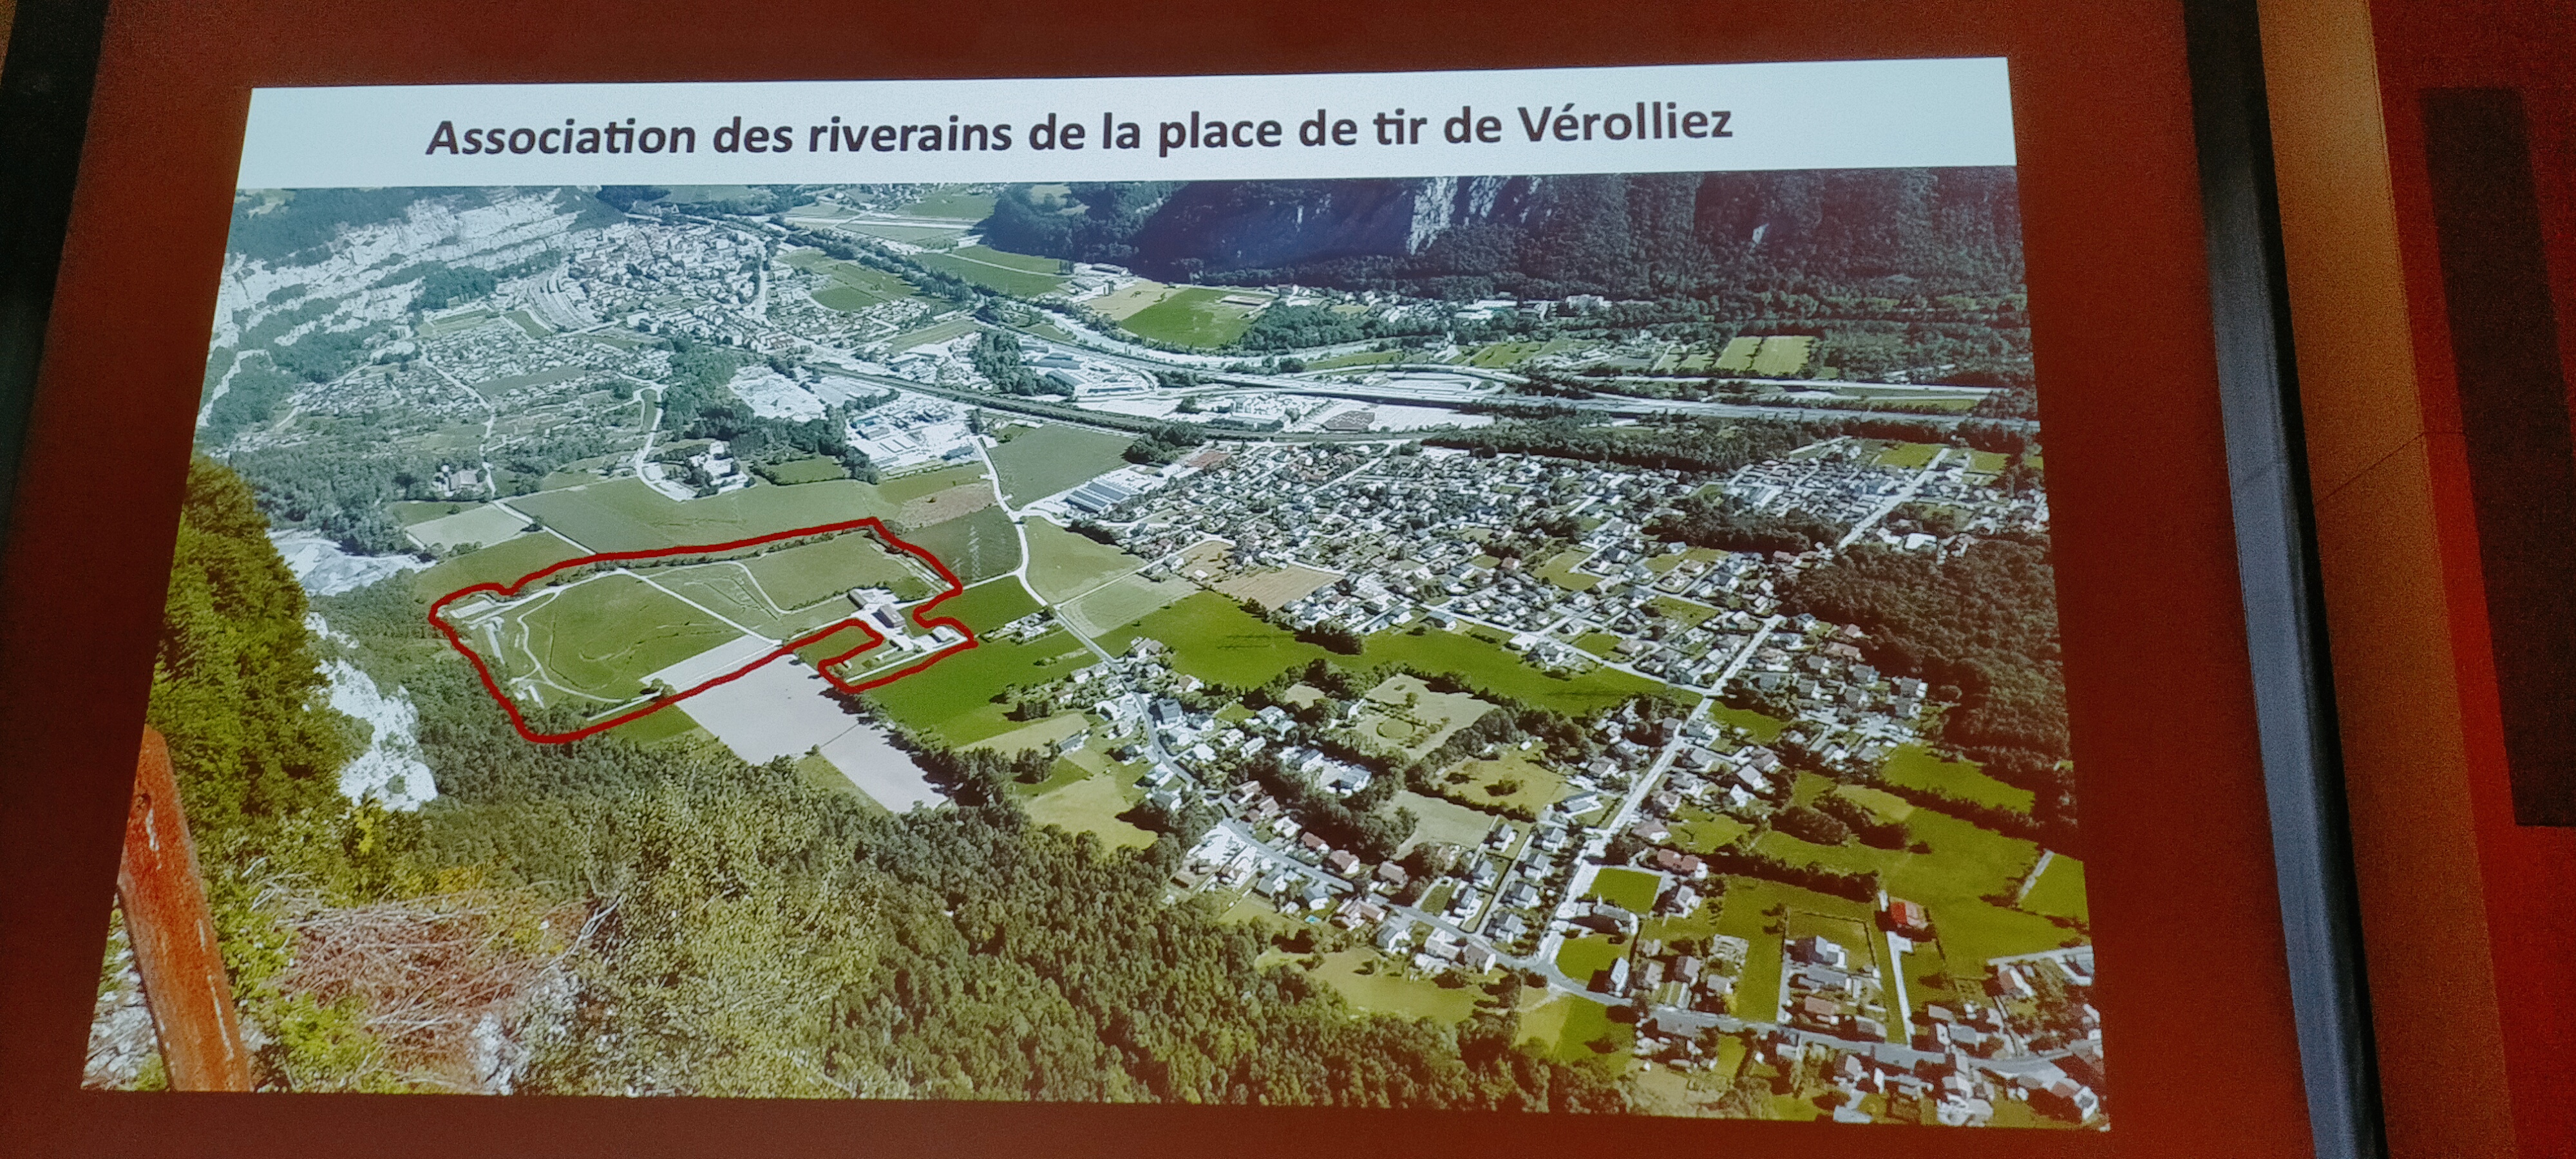 L'Association des riverains de la place de tir de Vérolliez a vu le jour à Saint-Maurice